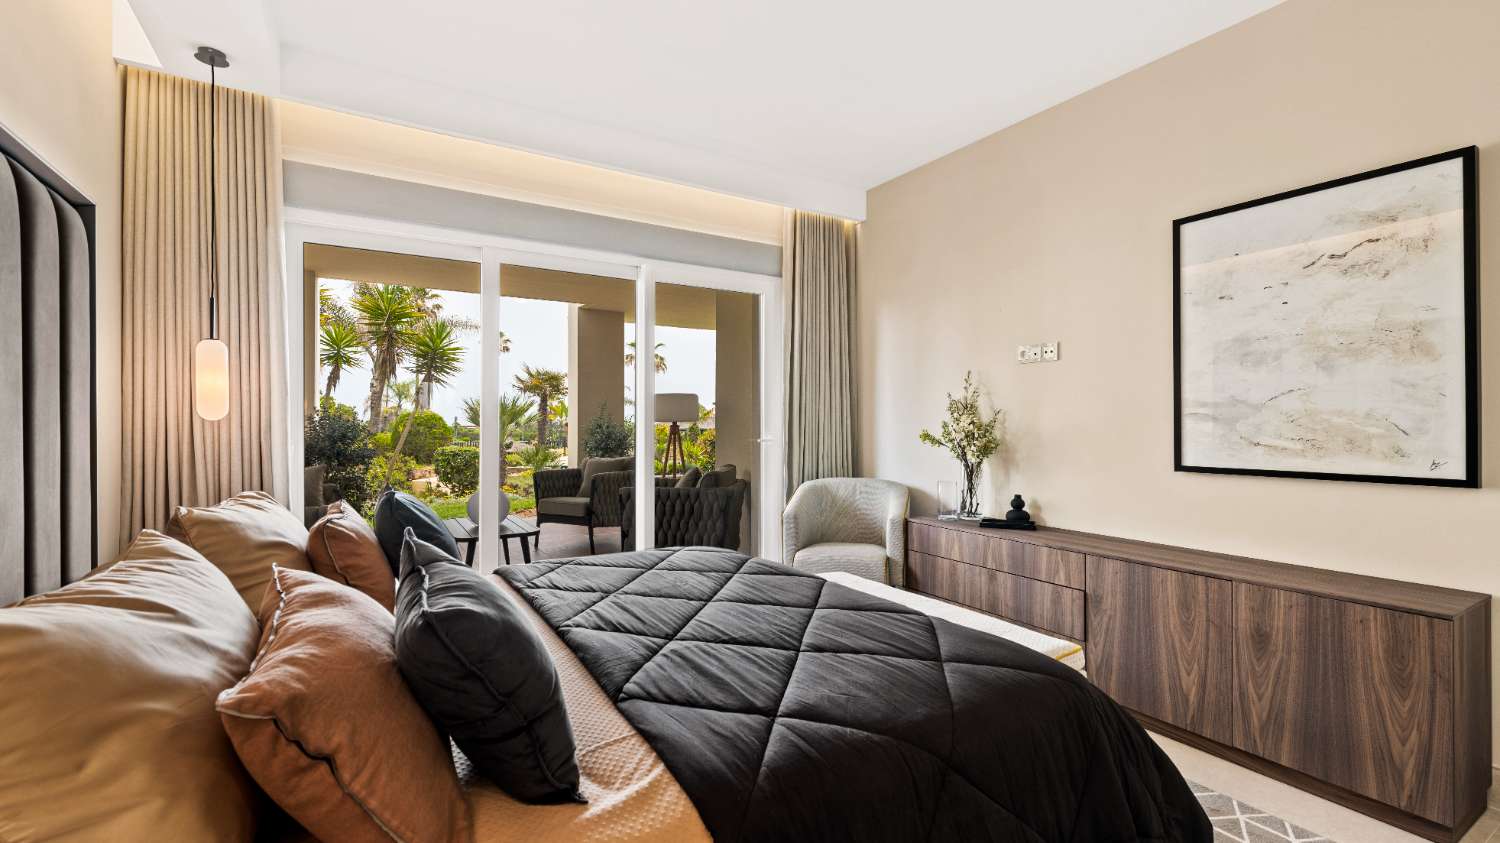 Apartamento en primera línea de playa, orientación sur, vistas al mar en planta baja de 4 dormitorios totalmente renovado en Bahía del Velerin.